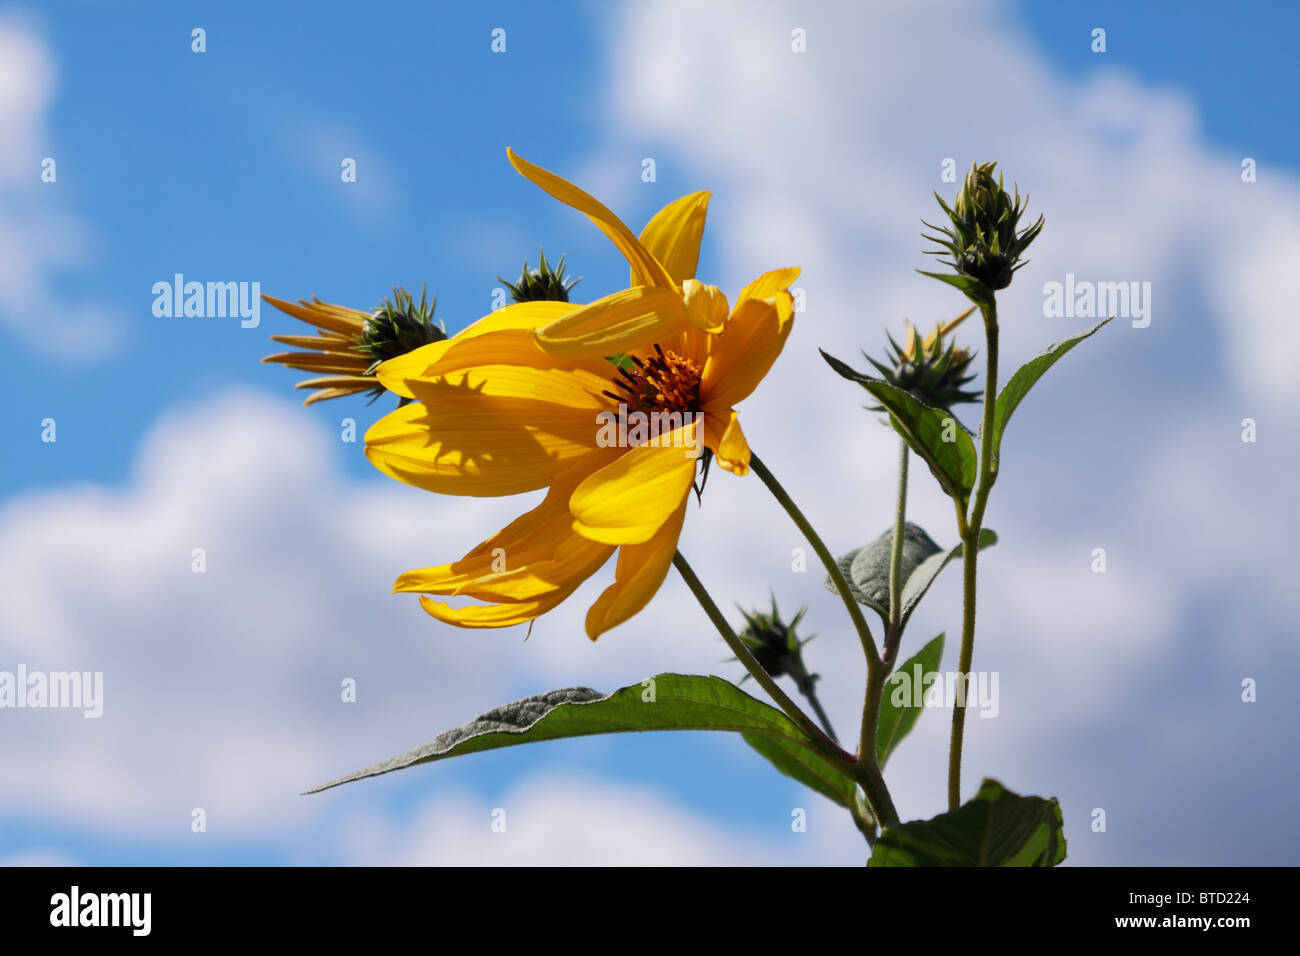 Wild sunflower in wind Stock Photo